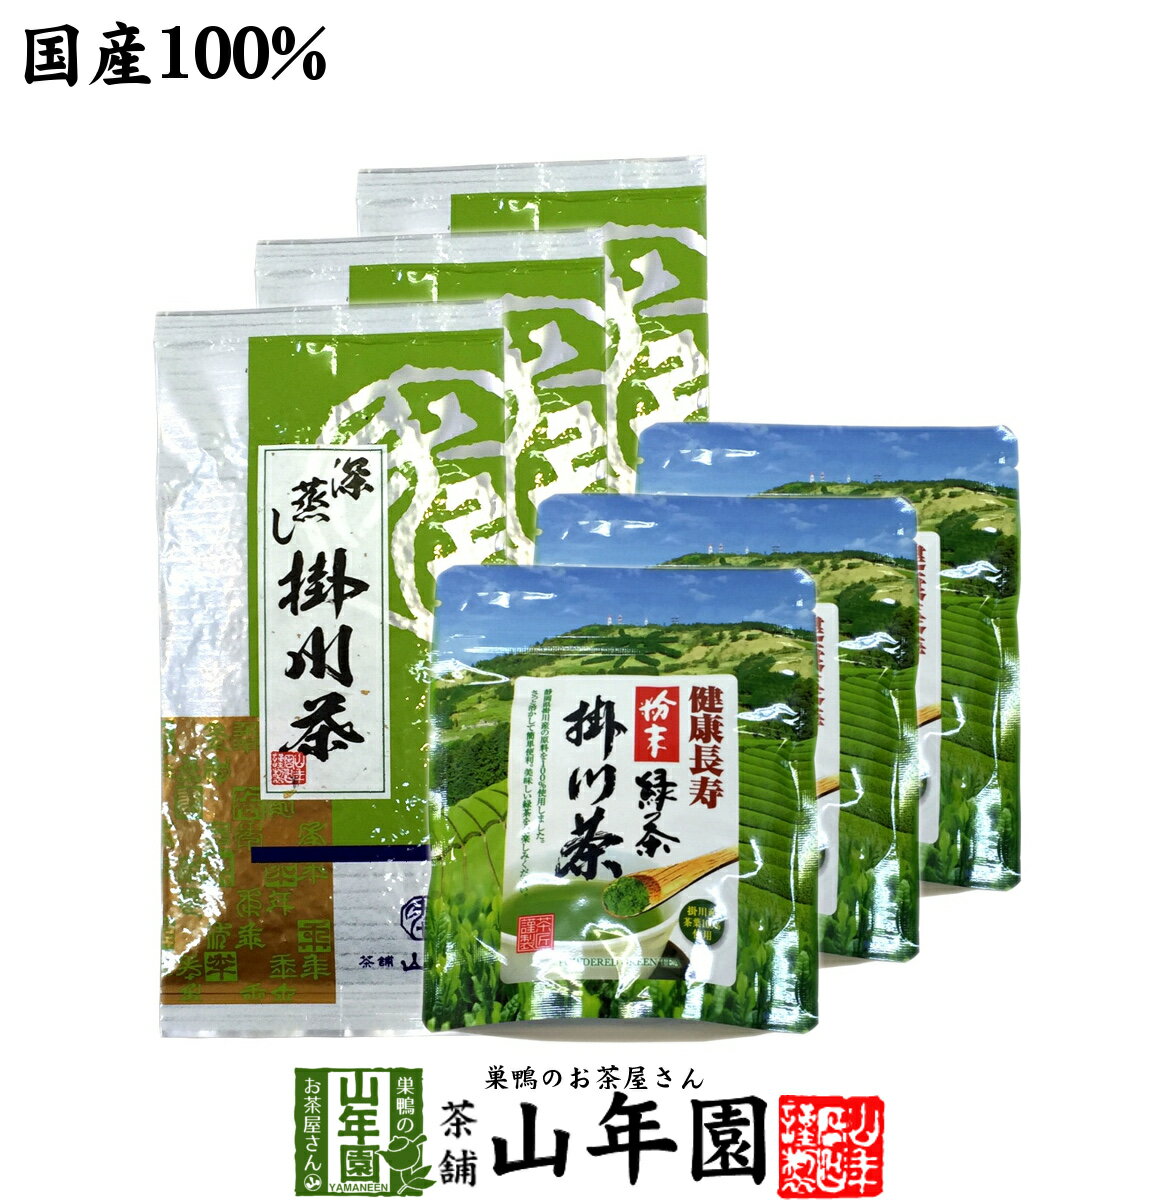 【掛川茶】掛川深蒸し茶+掛川粉末茶セット 6袋セット(300